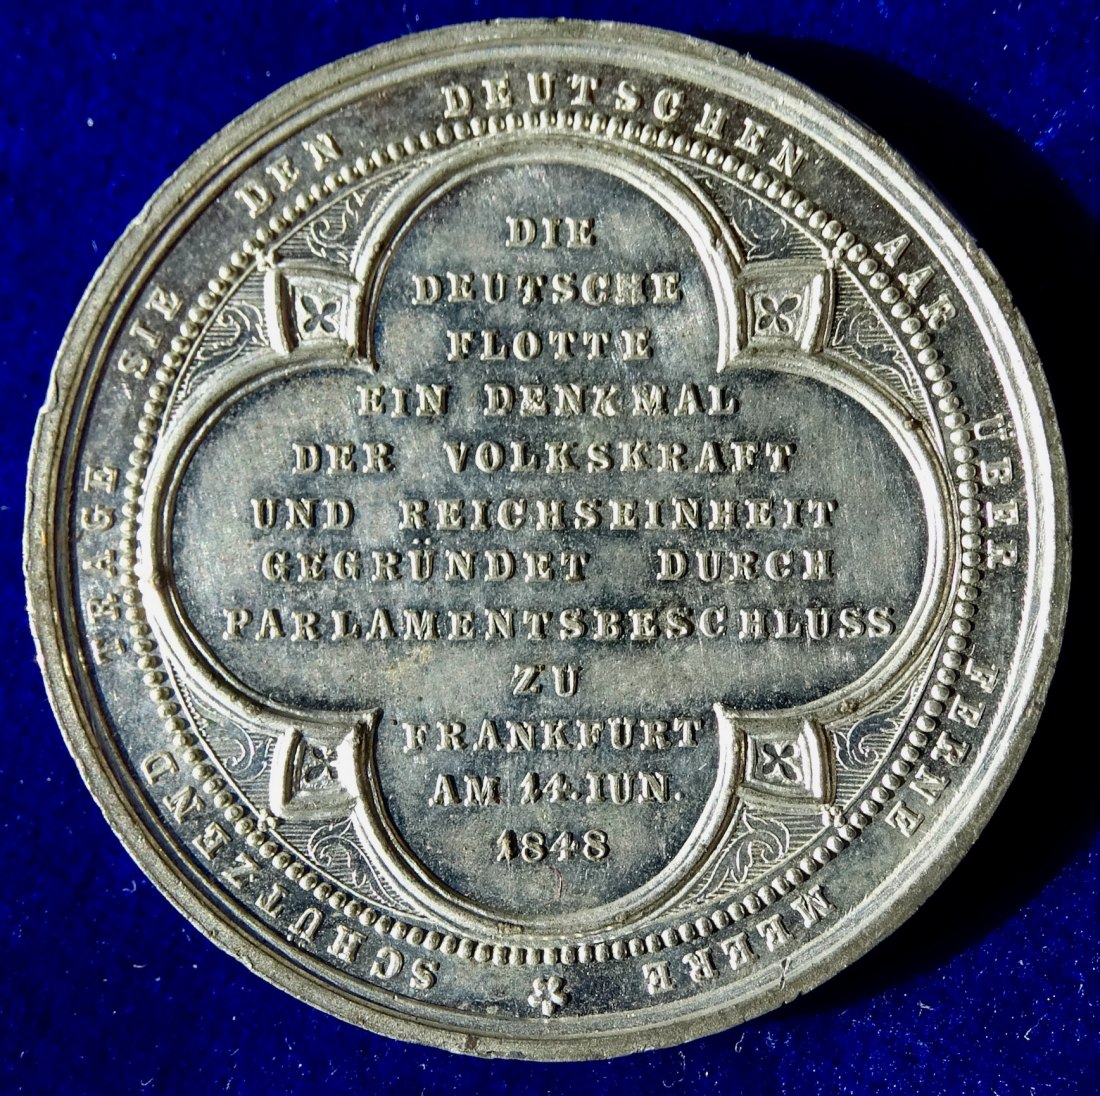  Gründung der Deutschen Flotte im Frankfurter Parlament, Numisnautik Medaille 1848 von Lange.   